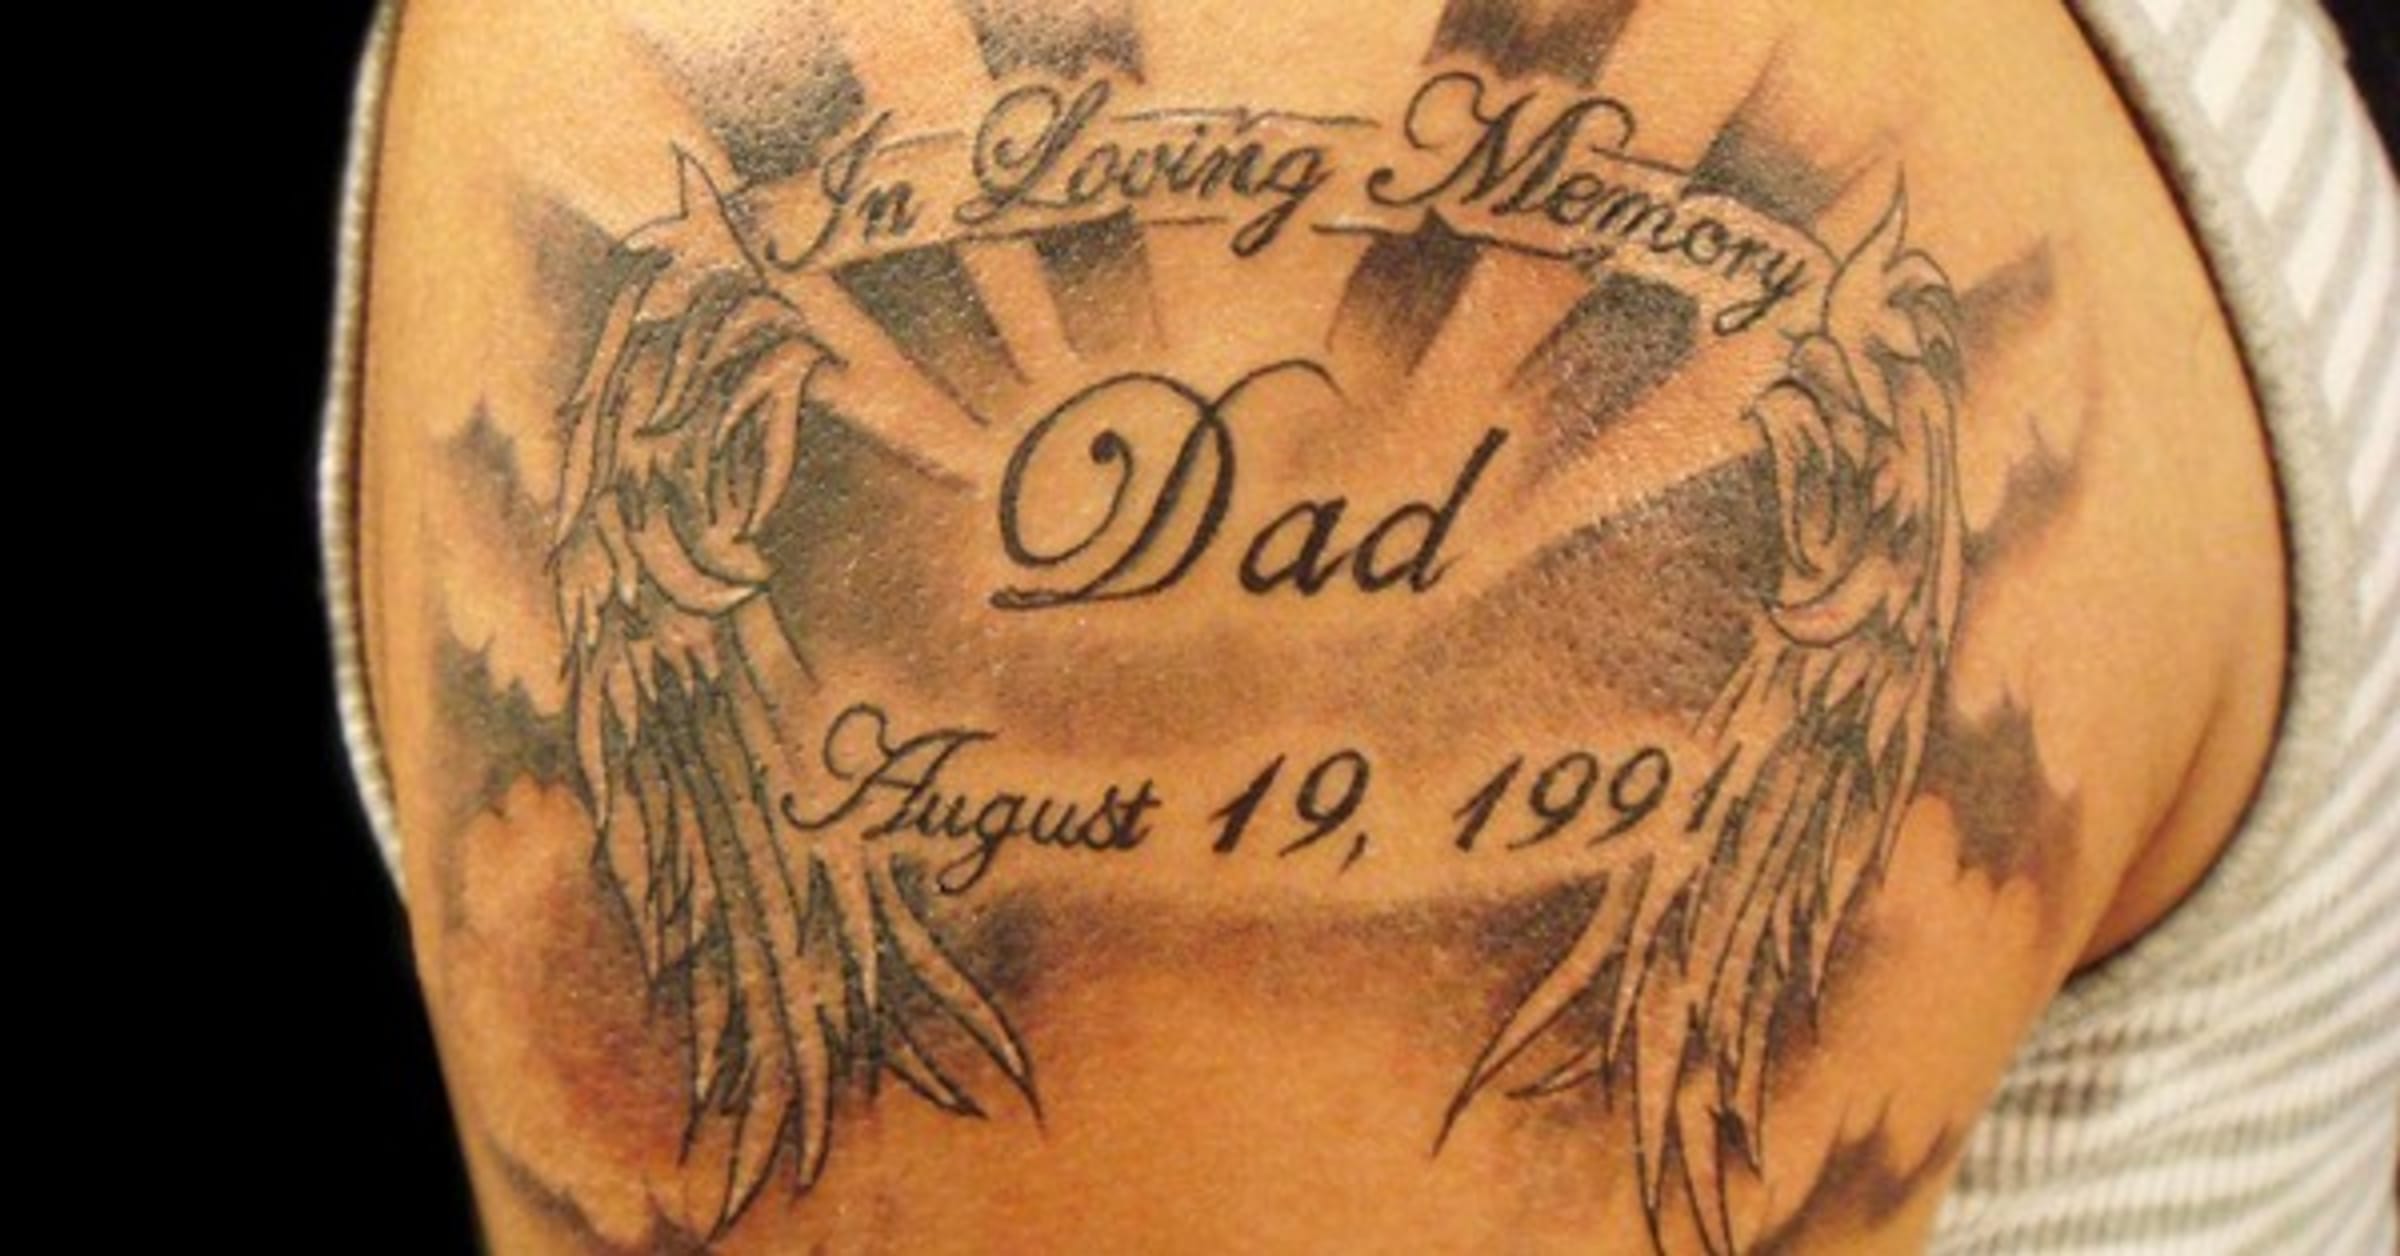 memorial tattoo designs for mom